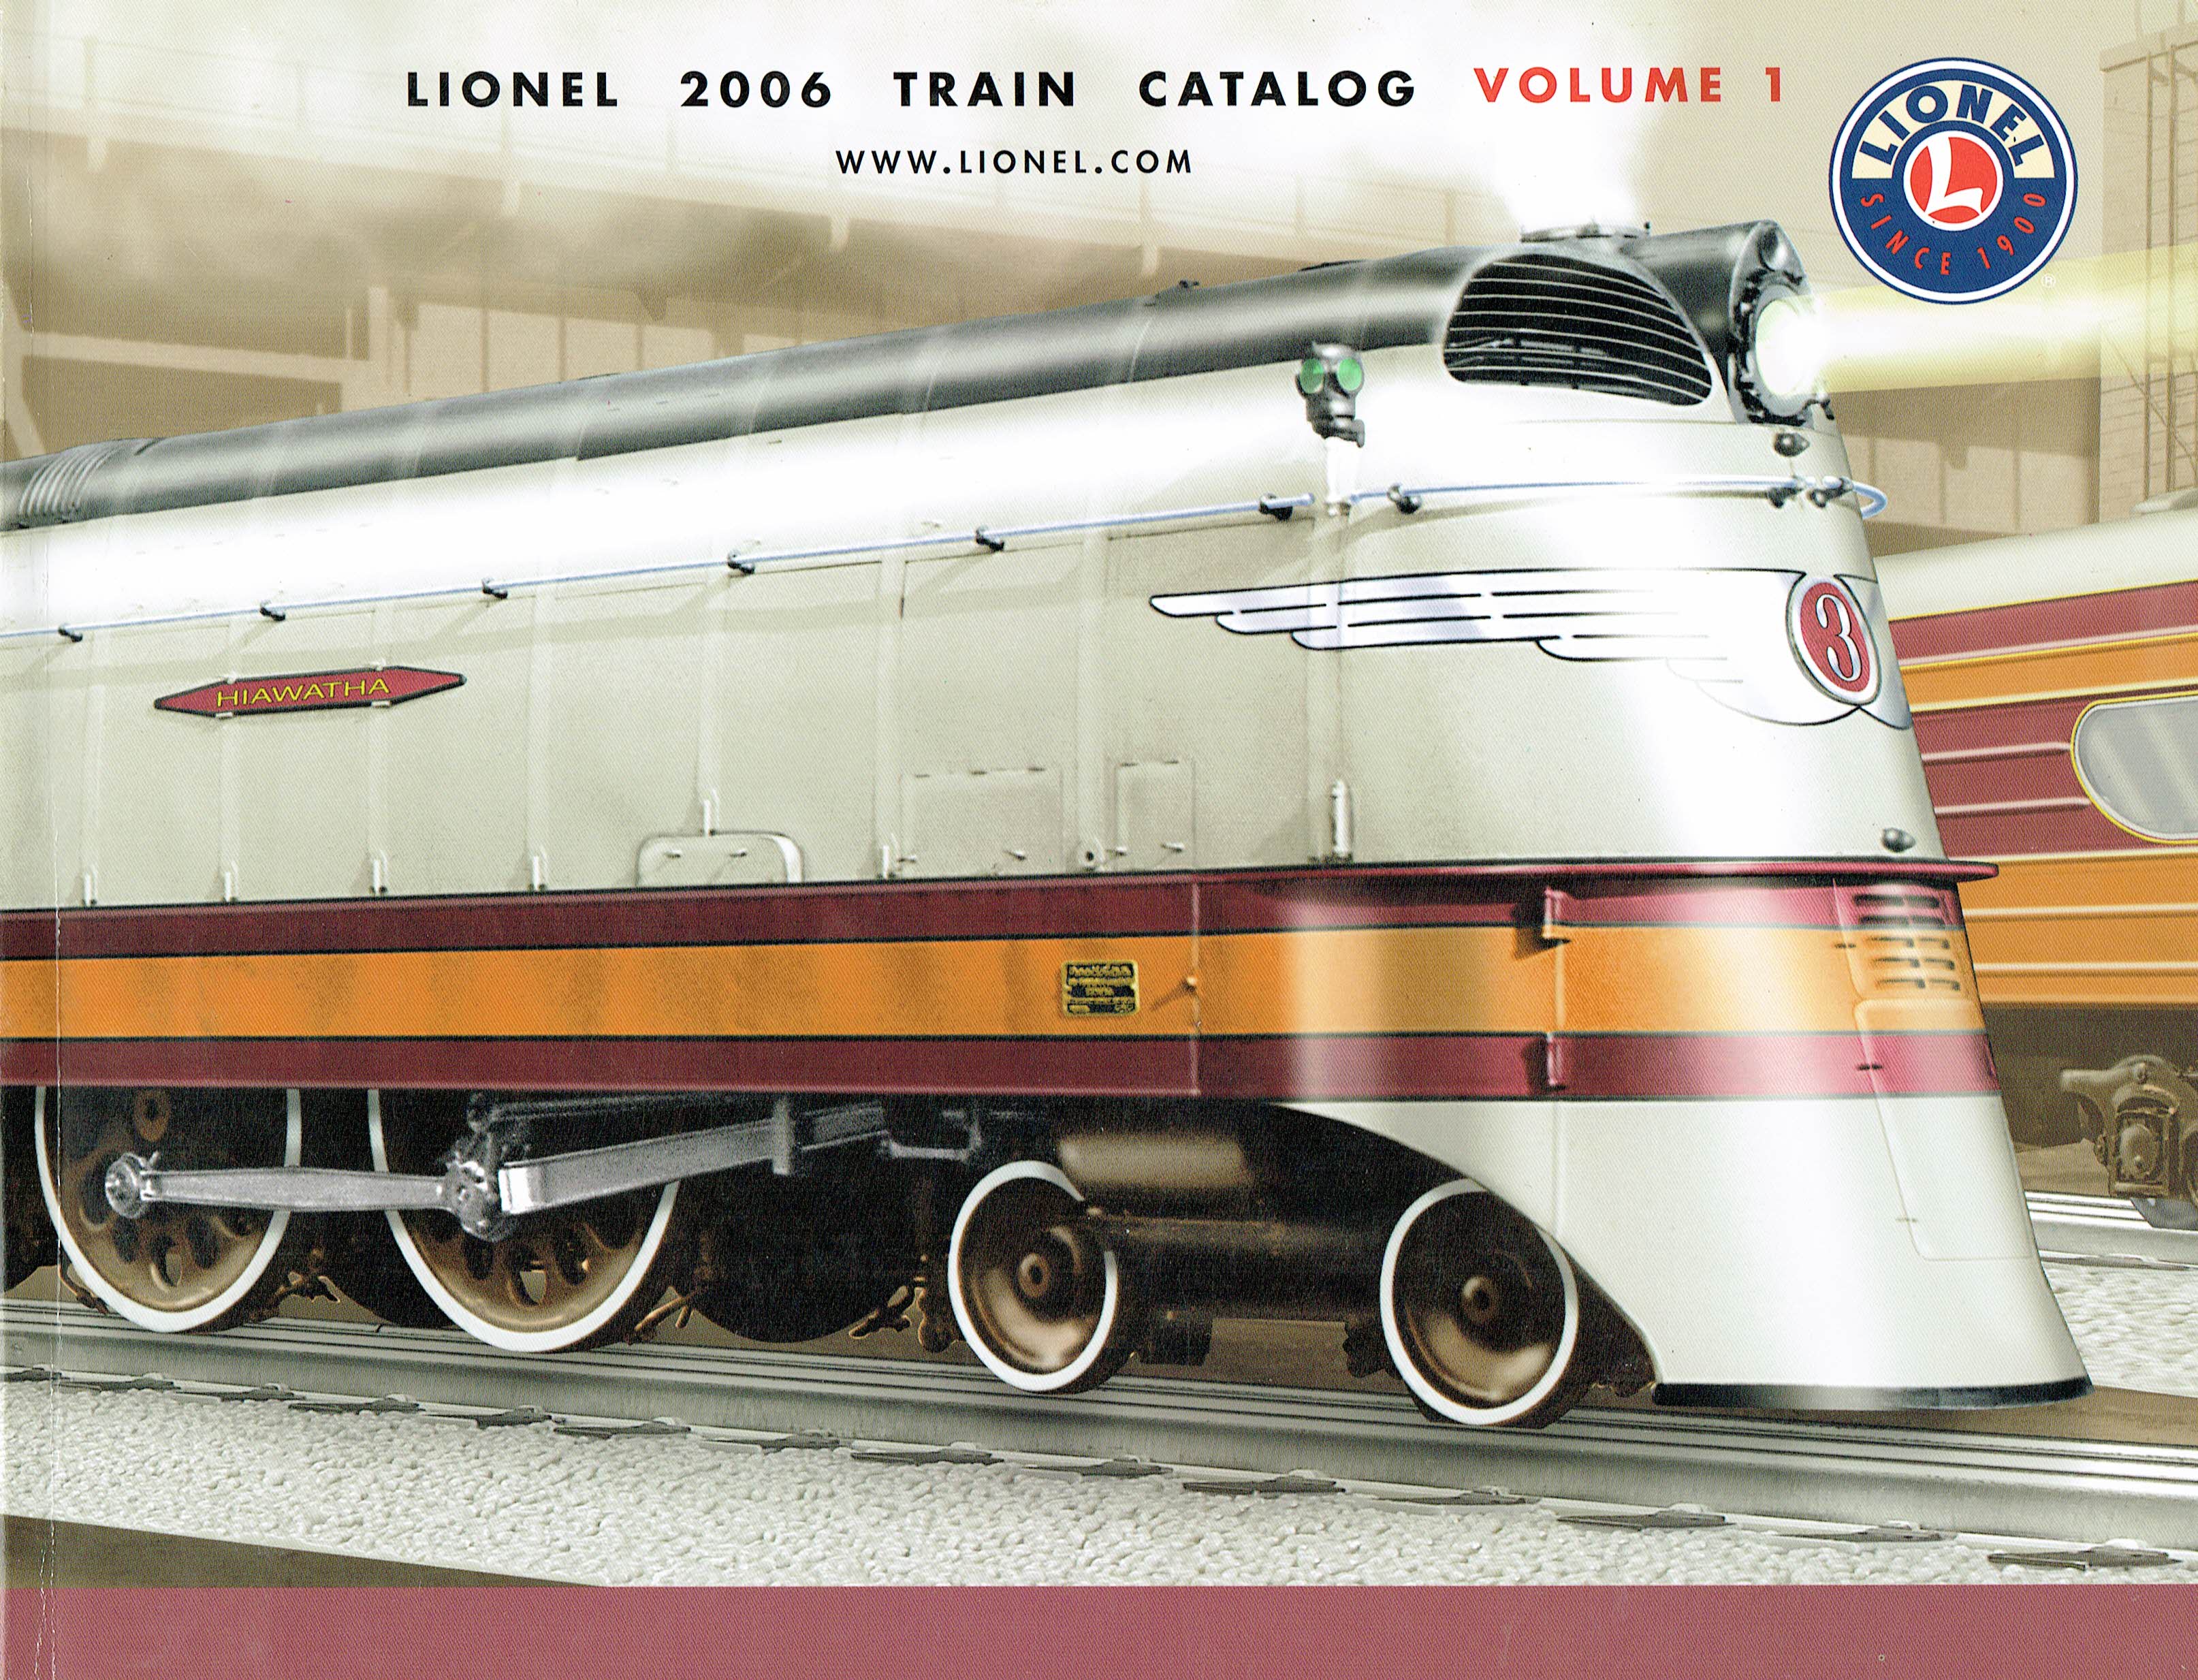 Lionel 2006 Train Catalog Volume 1 image